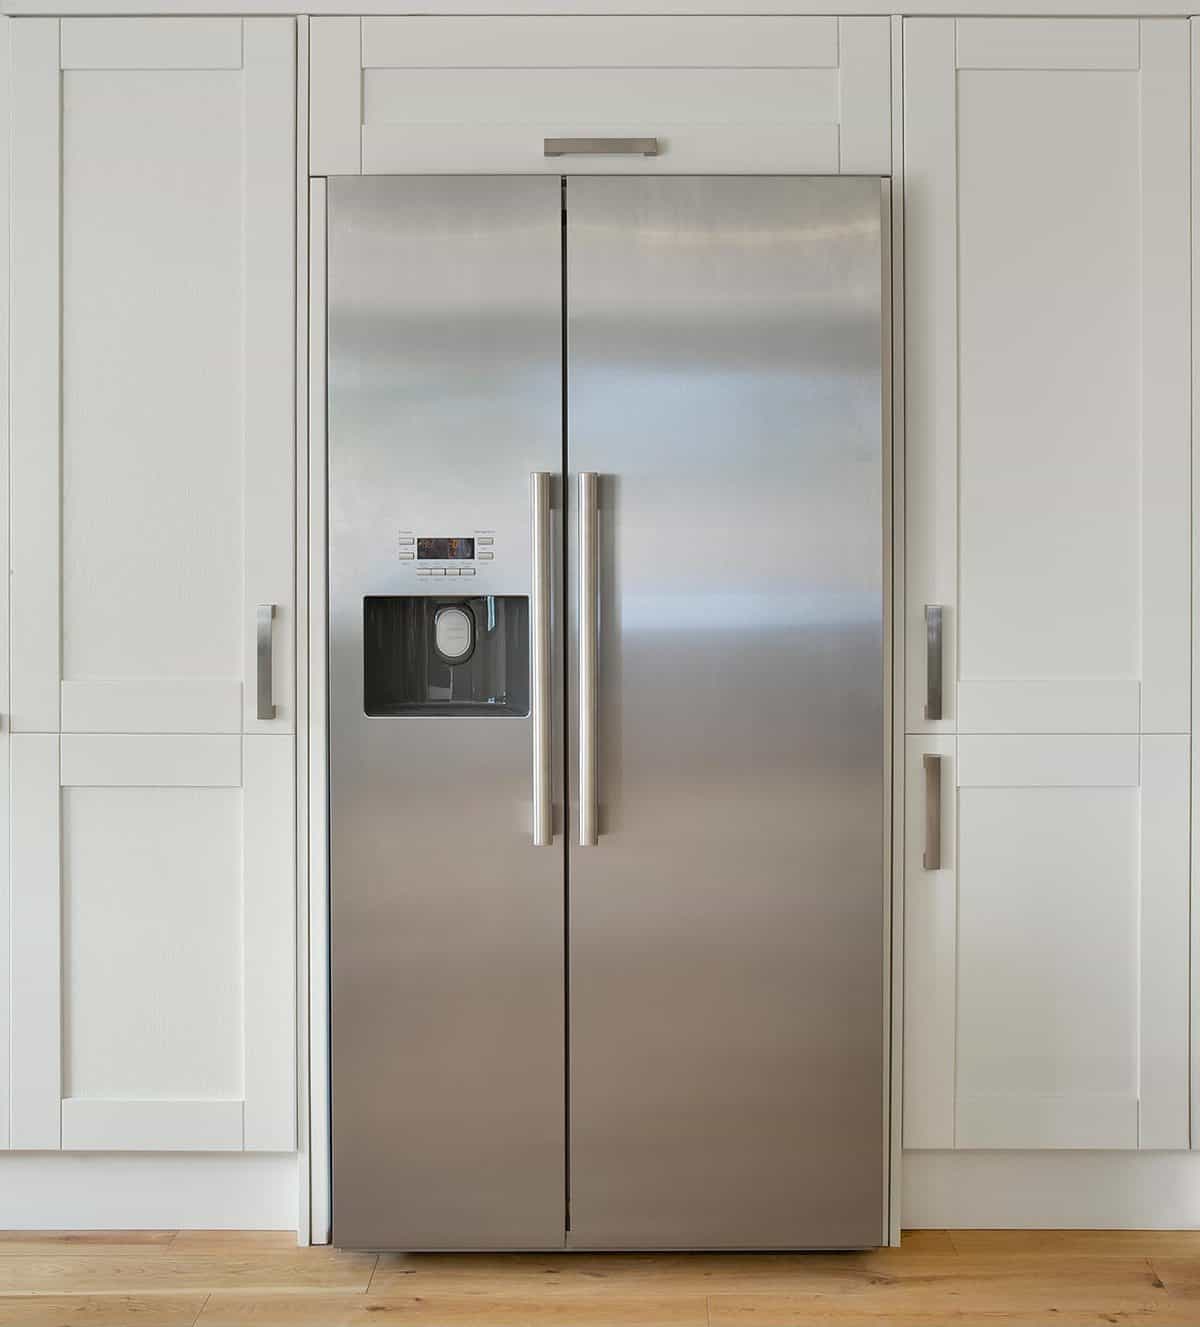 美国冰箱冷冻组为银行奶油彩色farmhouse-style厨房橱柜bd手机下载